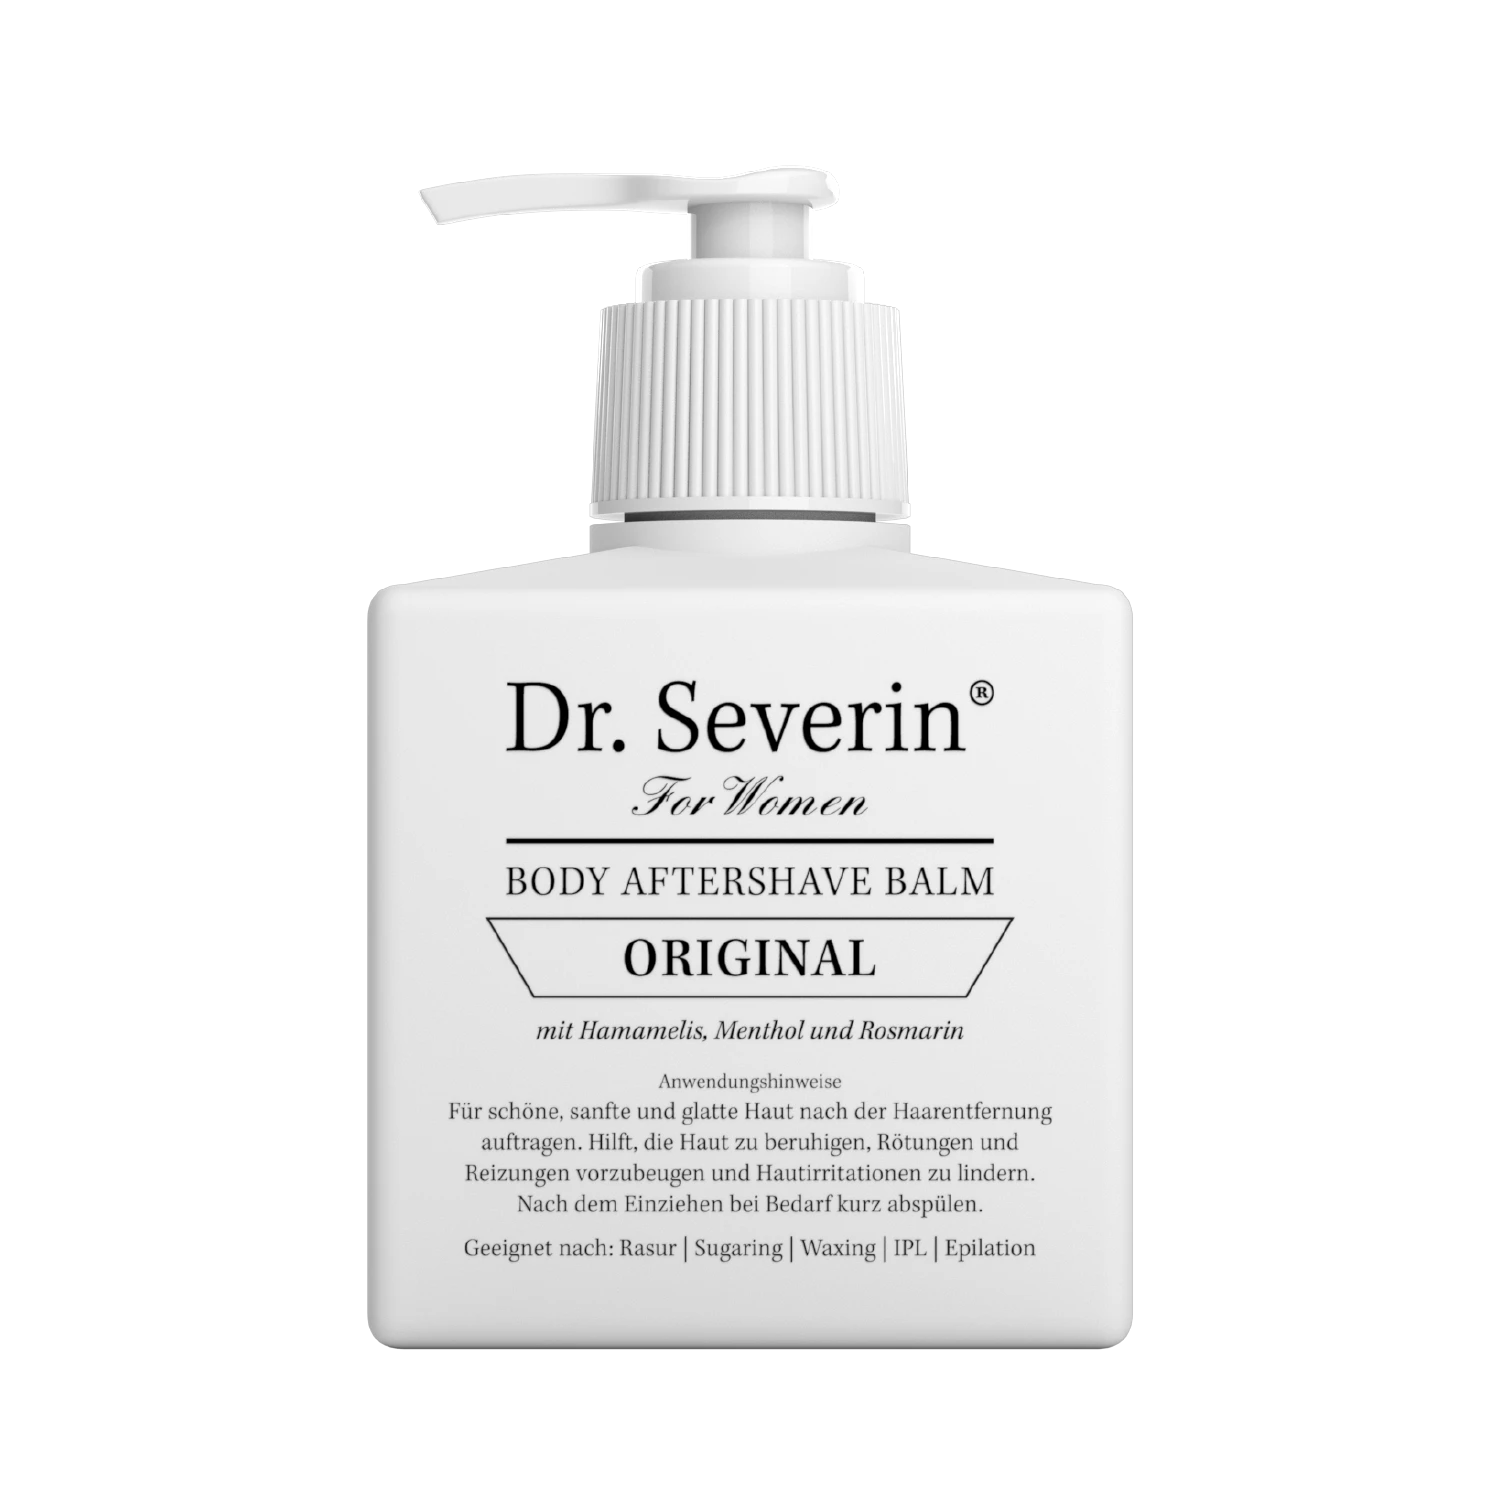 Wirksamer Hautschutz nach der Rasur an Achseln, Beinen, Intimbereich. Dr. Severin Original Body After Shave Balsam